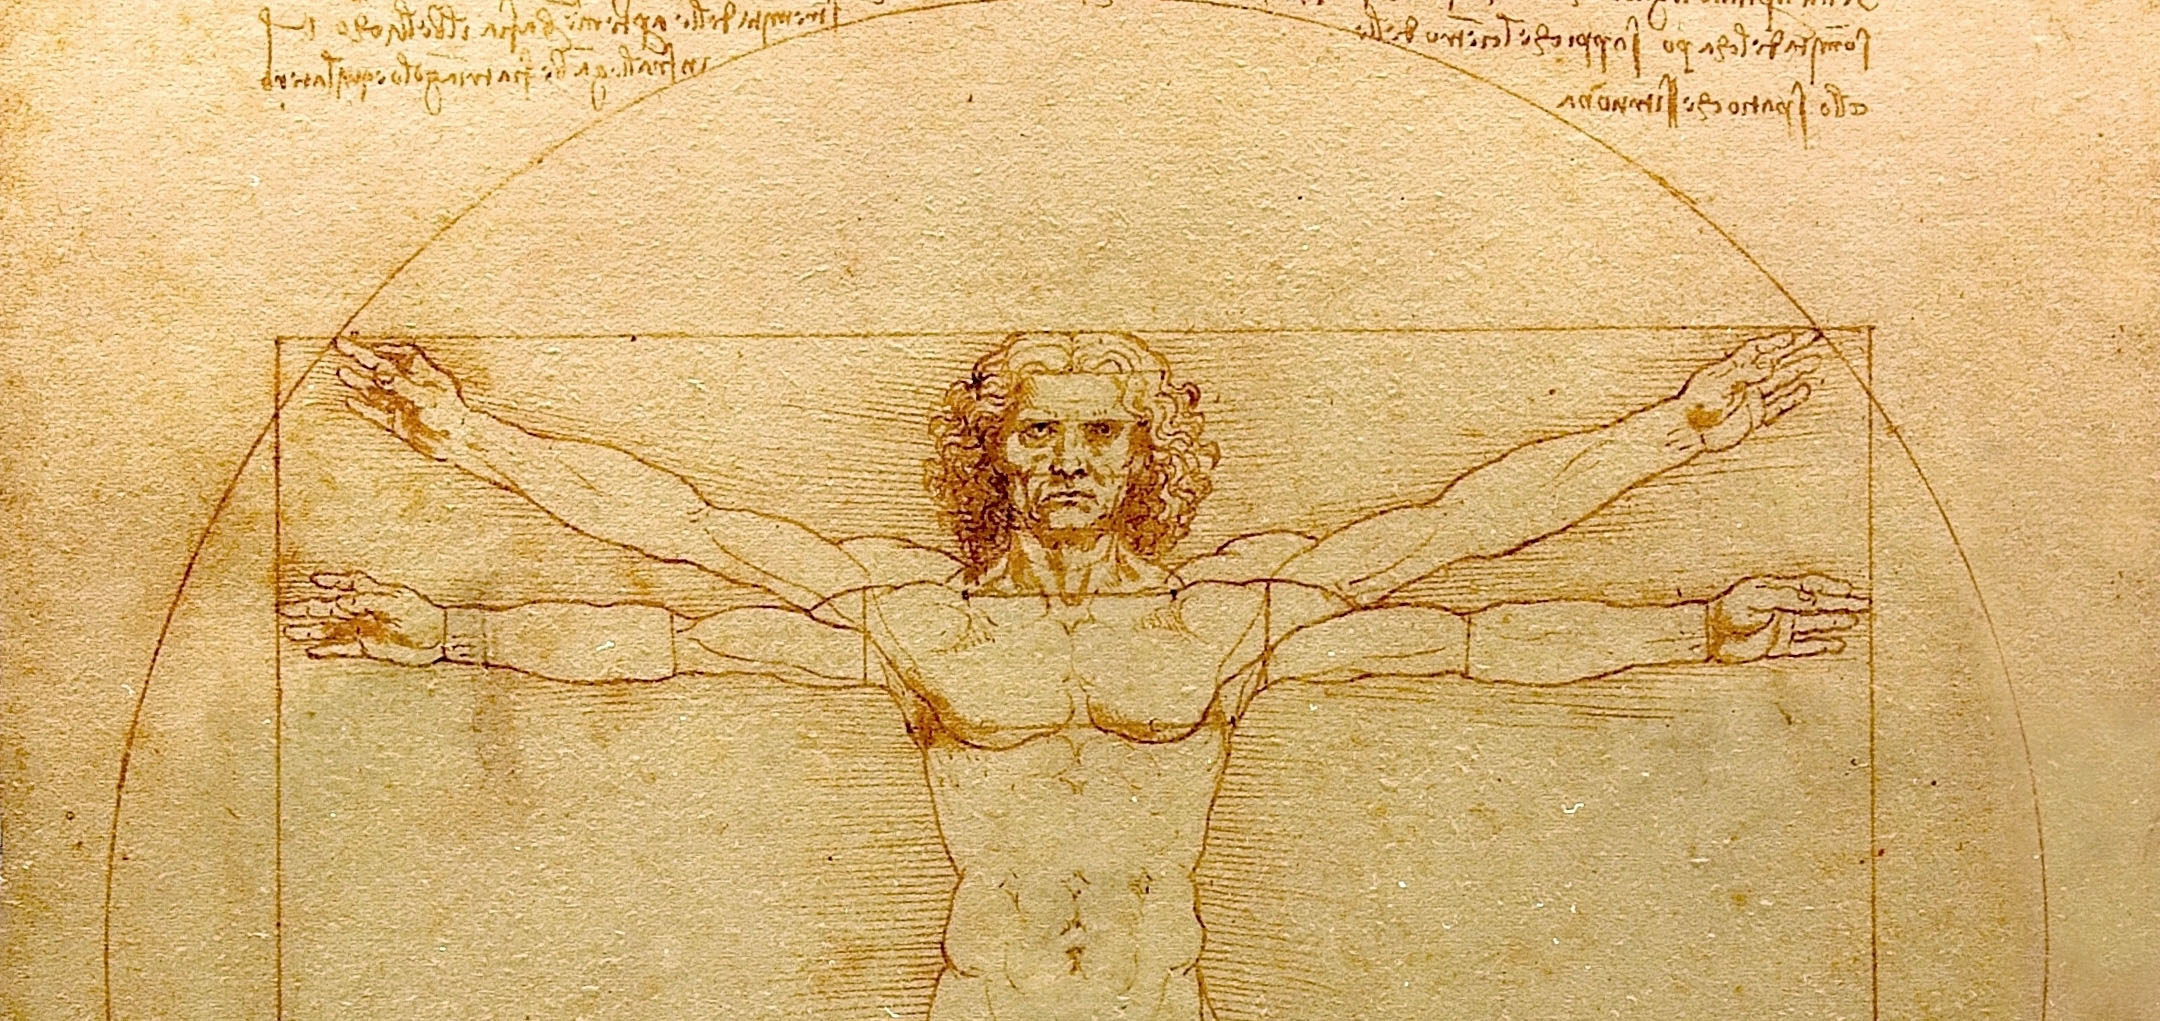 Vitruvian Man - Leonardo da Vinci (partial)